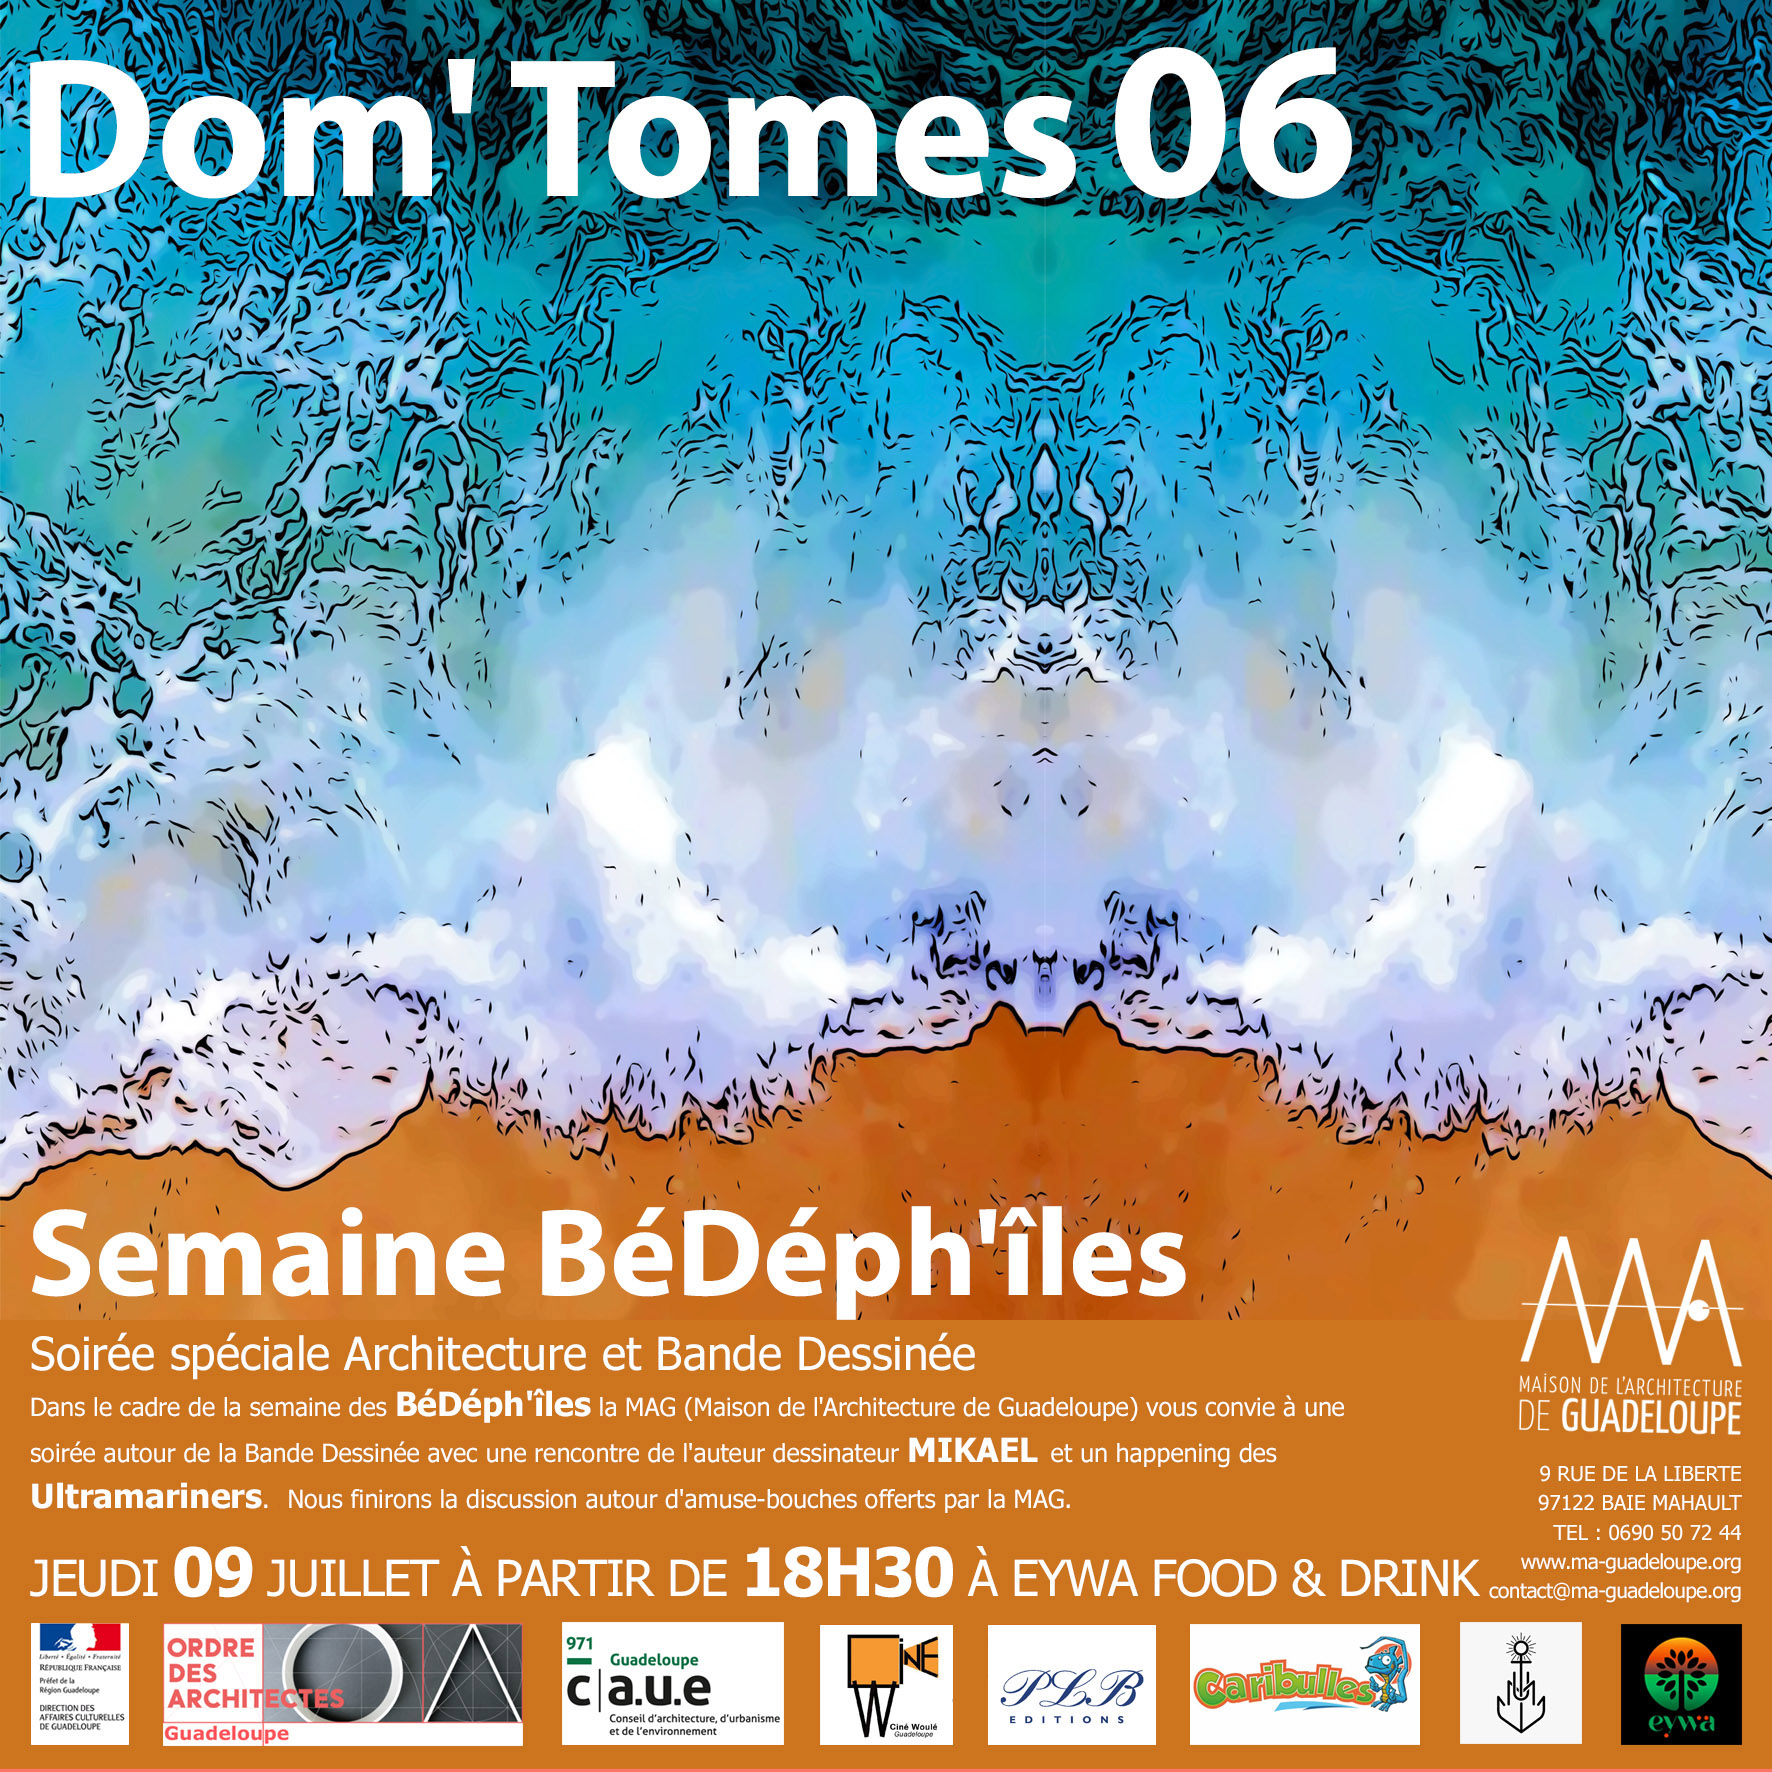 You are currently viewing Retour en image : Soirée Dom’Tomes06 « Architecture & Bande Dessinée » du jeudi 09 juillet 2020